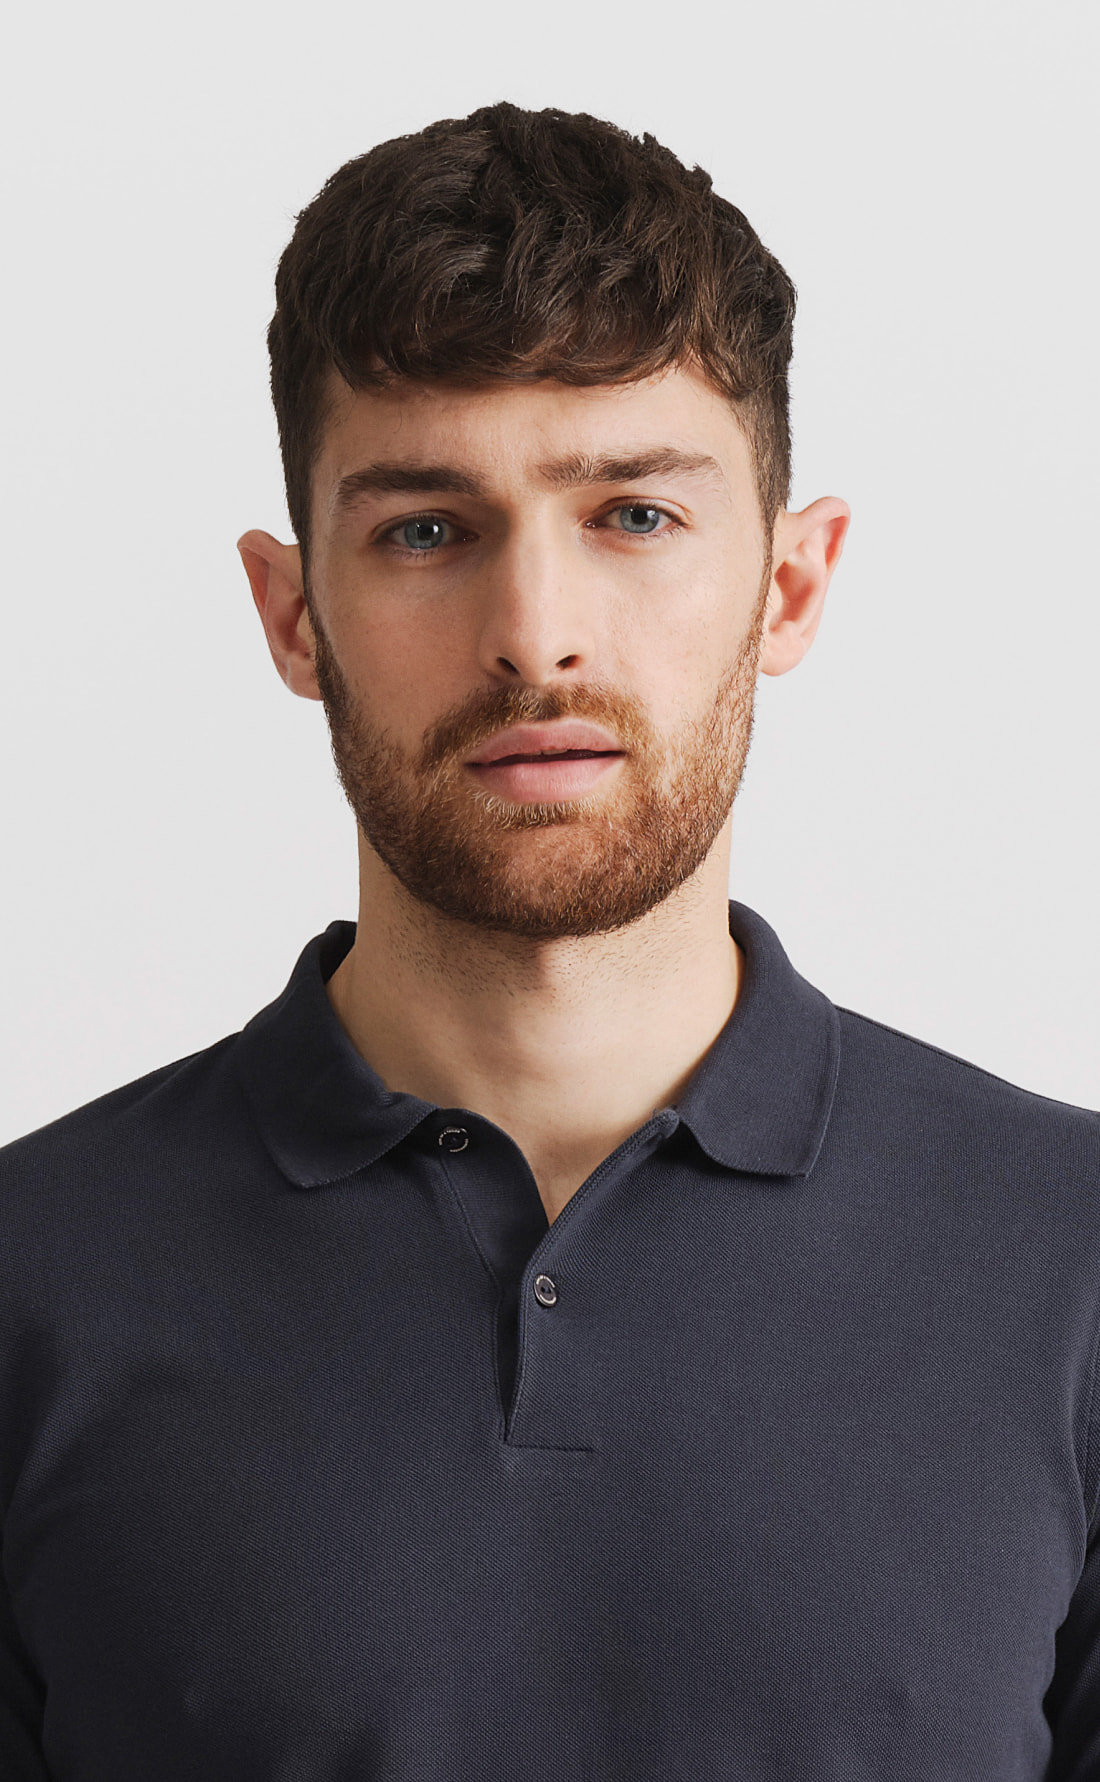 Short and Long Sleeve Polo Logo Shirts - You Design – Axe Head